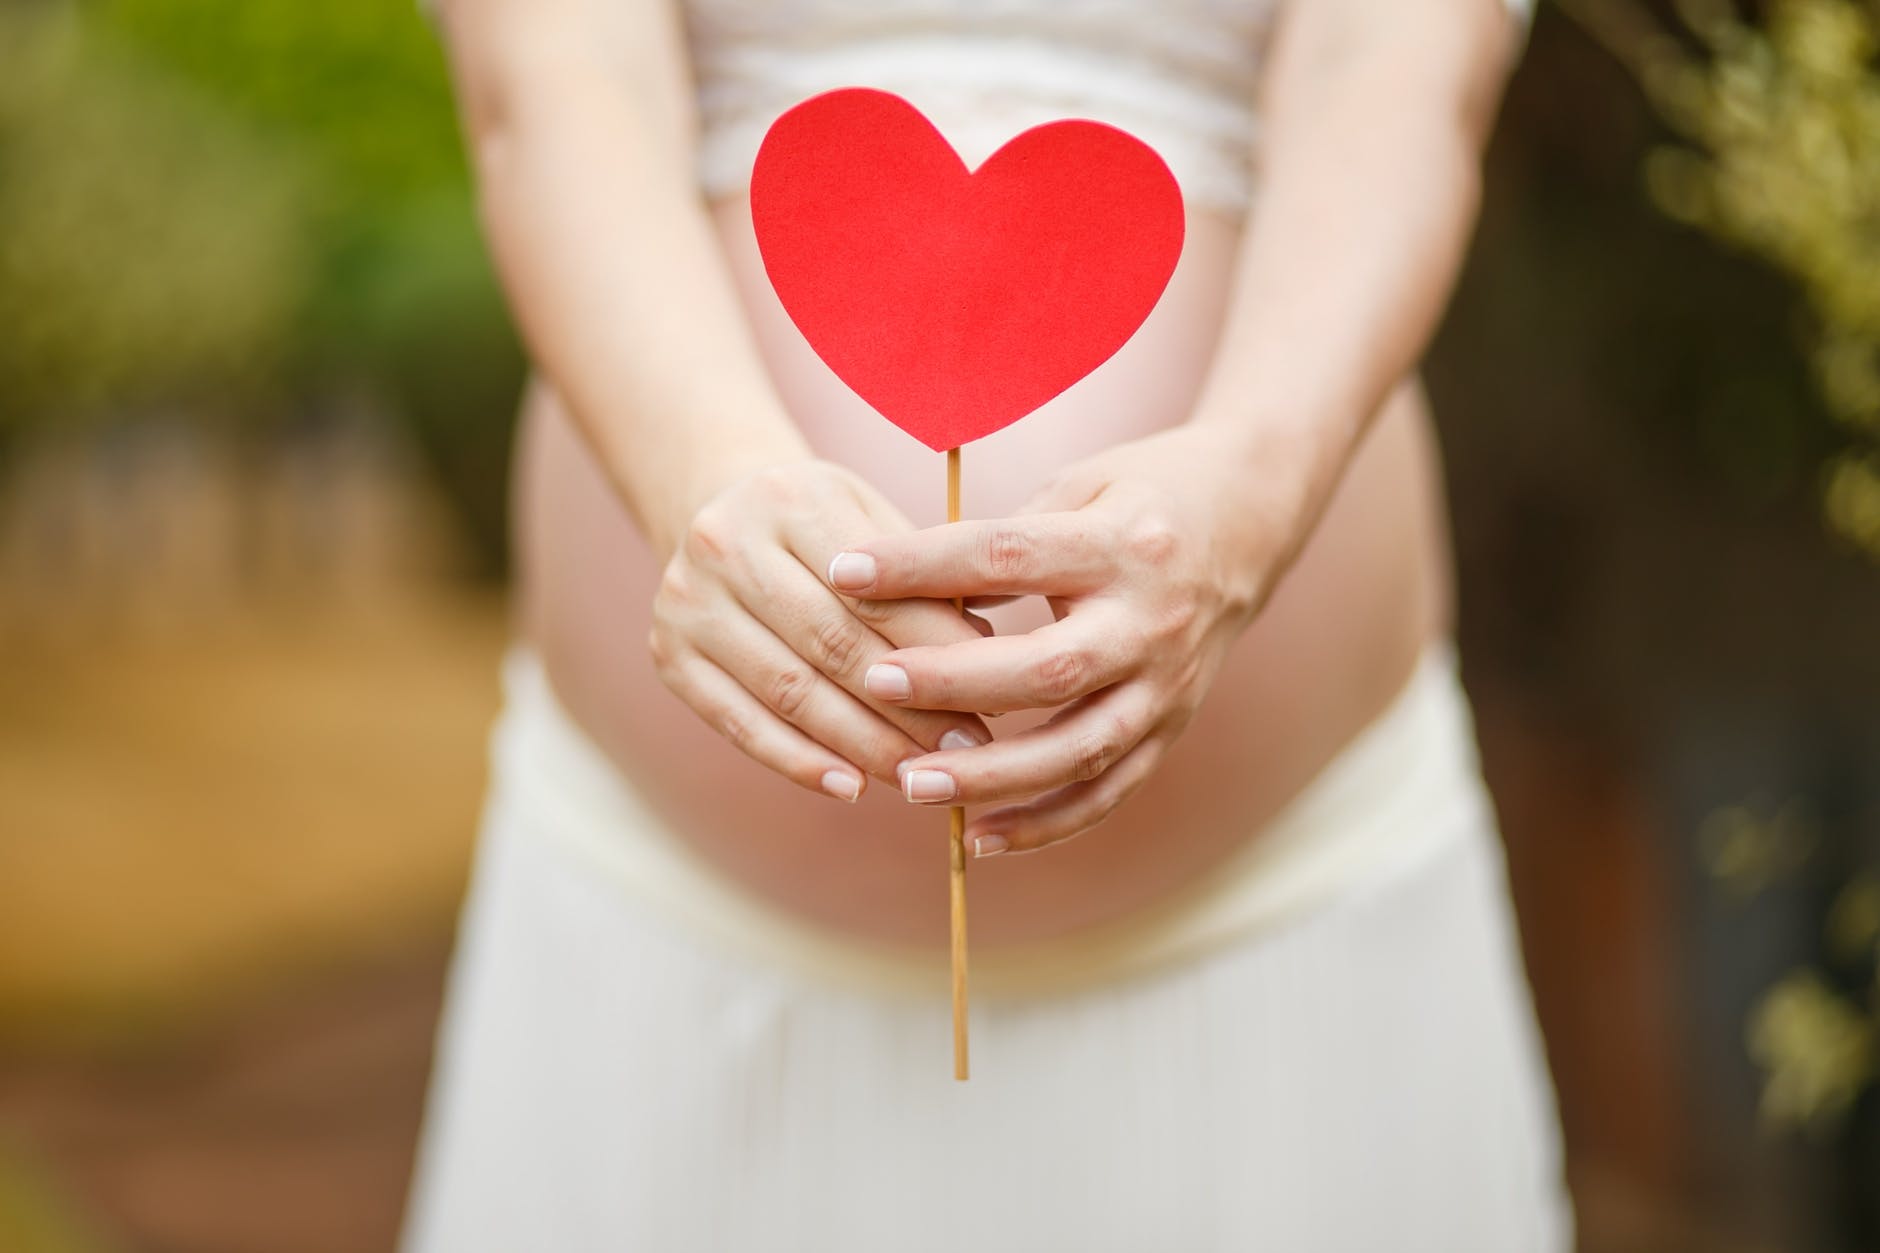 miti da sfatare in gravidanza